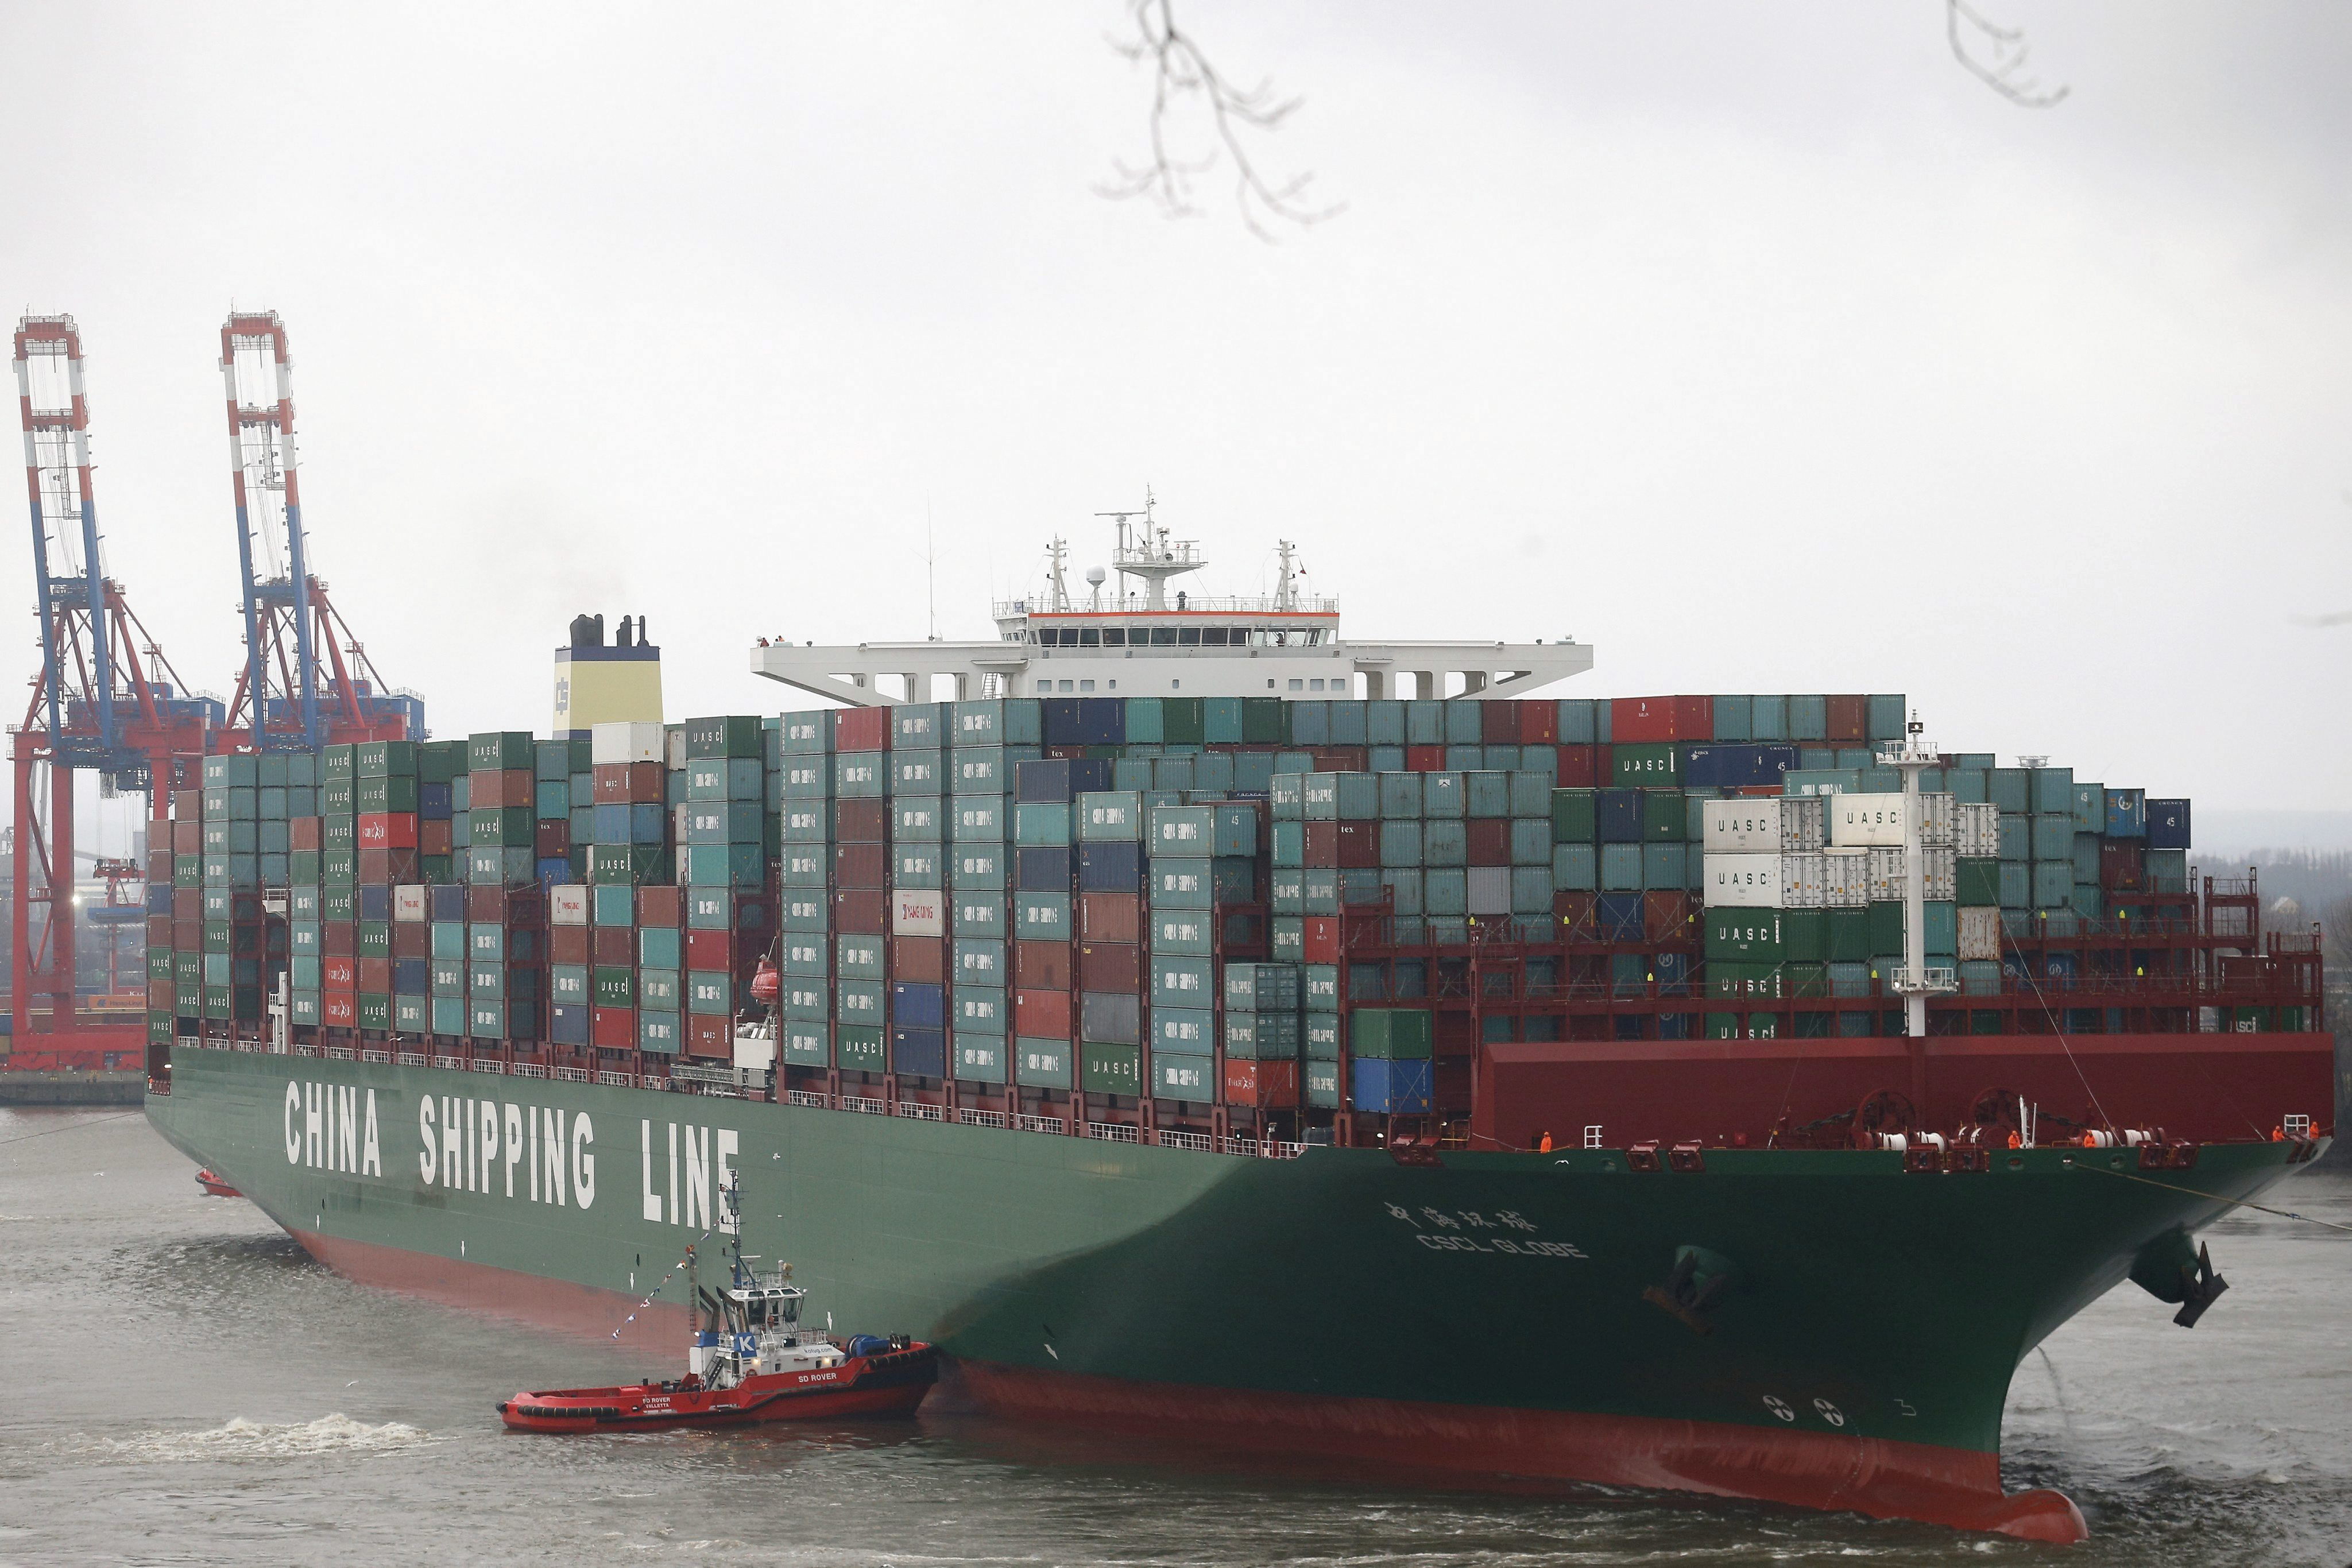 La Cámara señaló que los buques de carga demoran más en llegar y en lo posible "evitan la Argentina "por falta de flujo de mercadería y las trabas a las importaciones"
EFE/Joern Pollex
